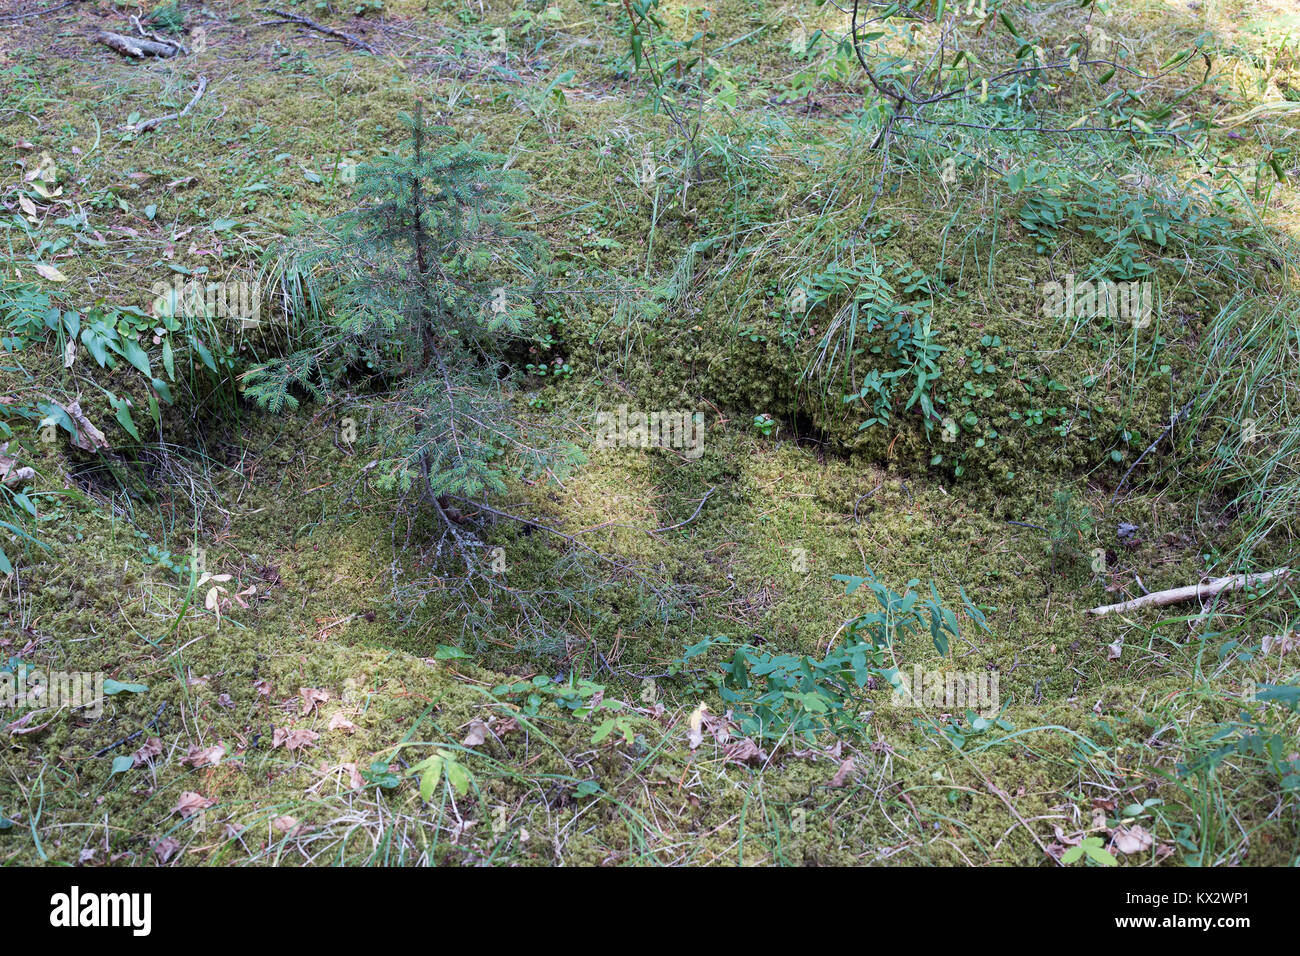 Jeunes épinettes qui poussent dans le creux à gauche d'un arbre, parc national Banff, Canada Banque D'Images